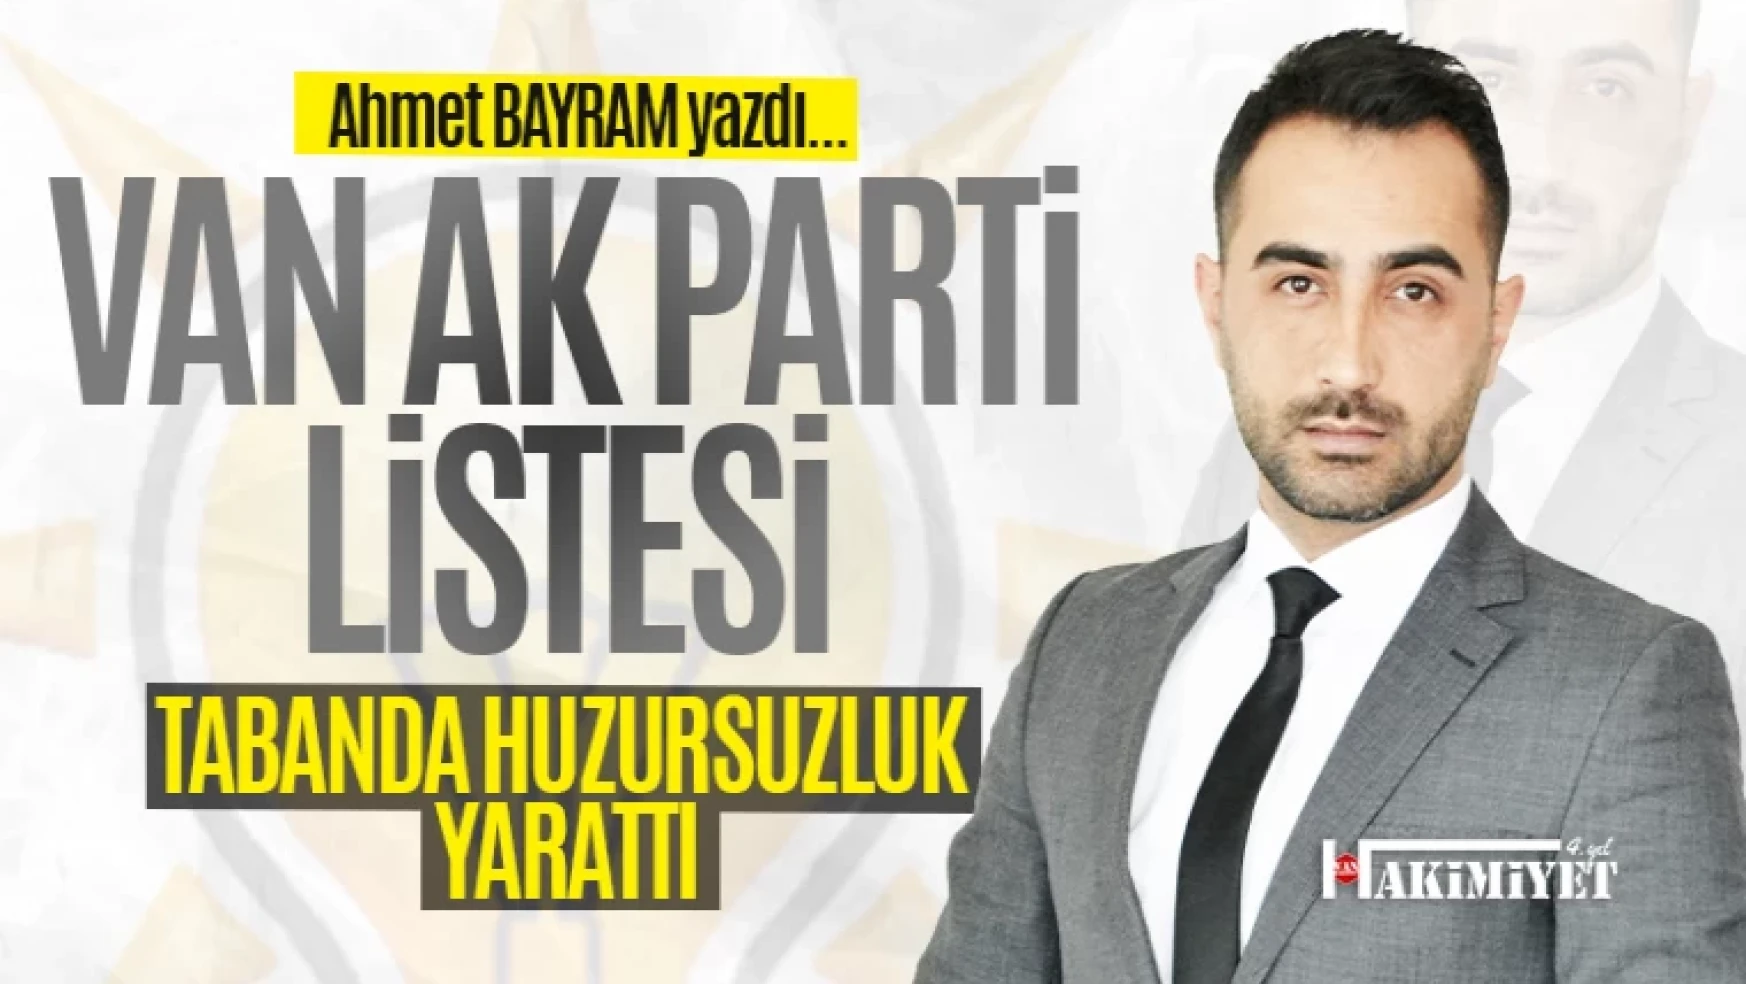 AK Parti listesi tabanı huzursuz etti - Ahmet Bayram yazdı...